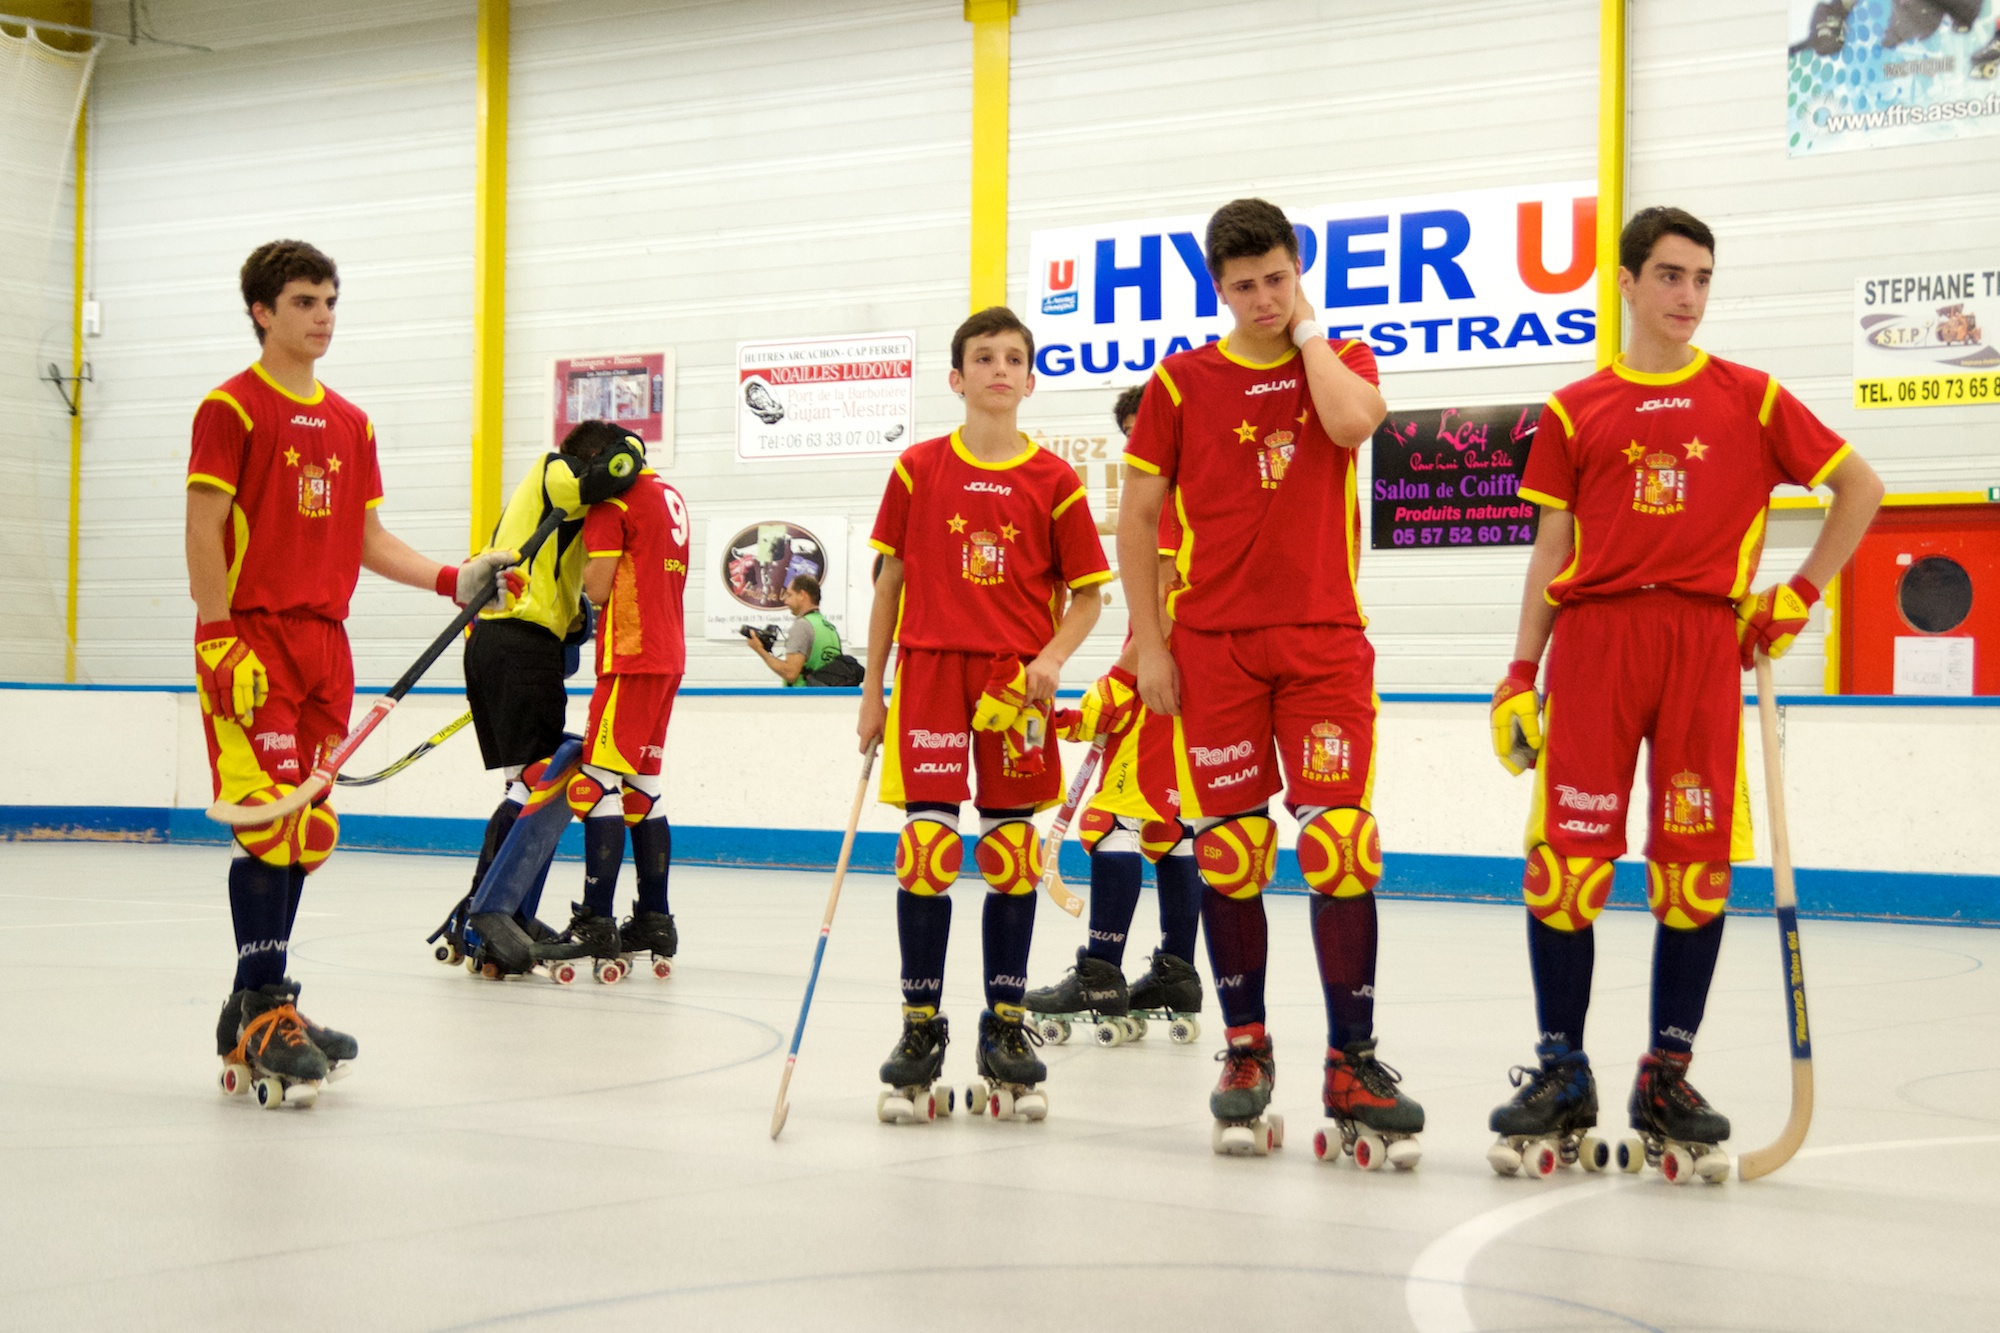 La Selección Española sub-17 en el Campeonato de Europa - Hockey Patines